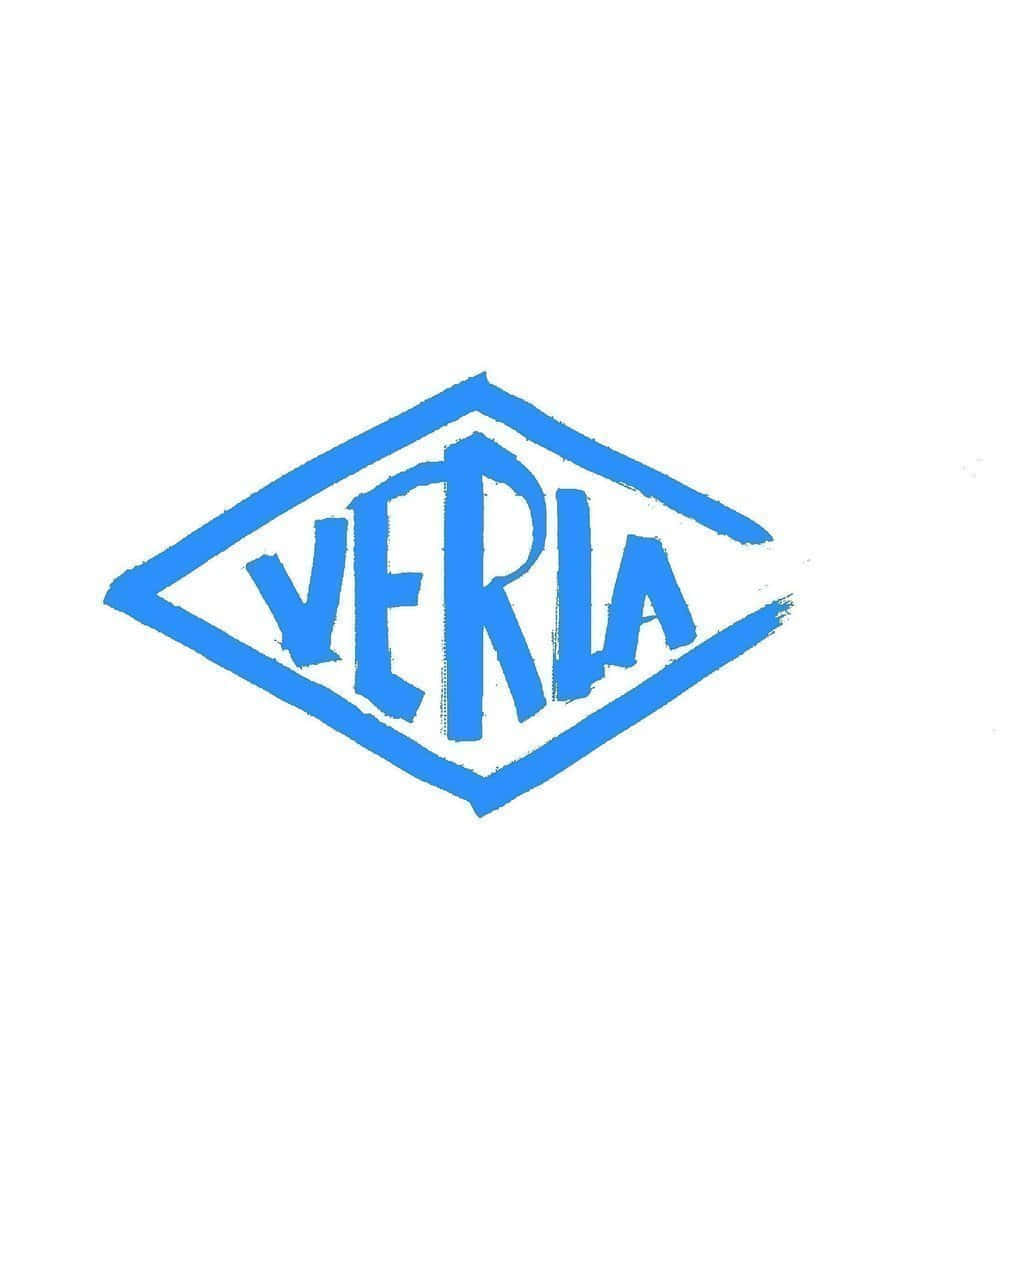 VERLA-PHARM Arzneimittel GmbH & Co. KG